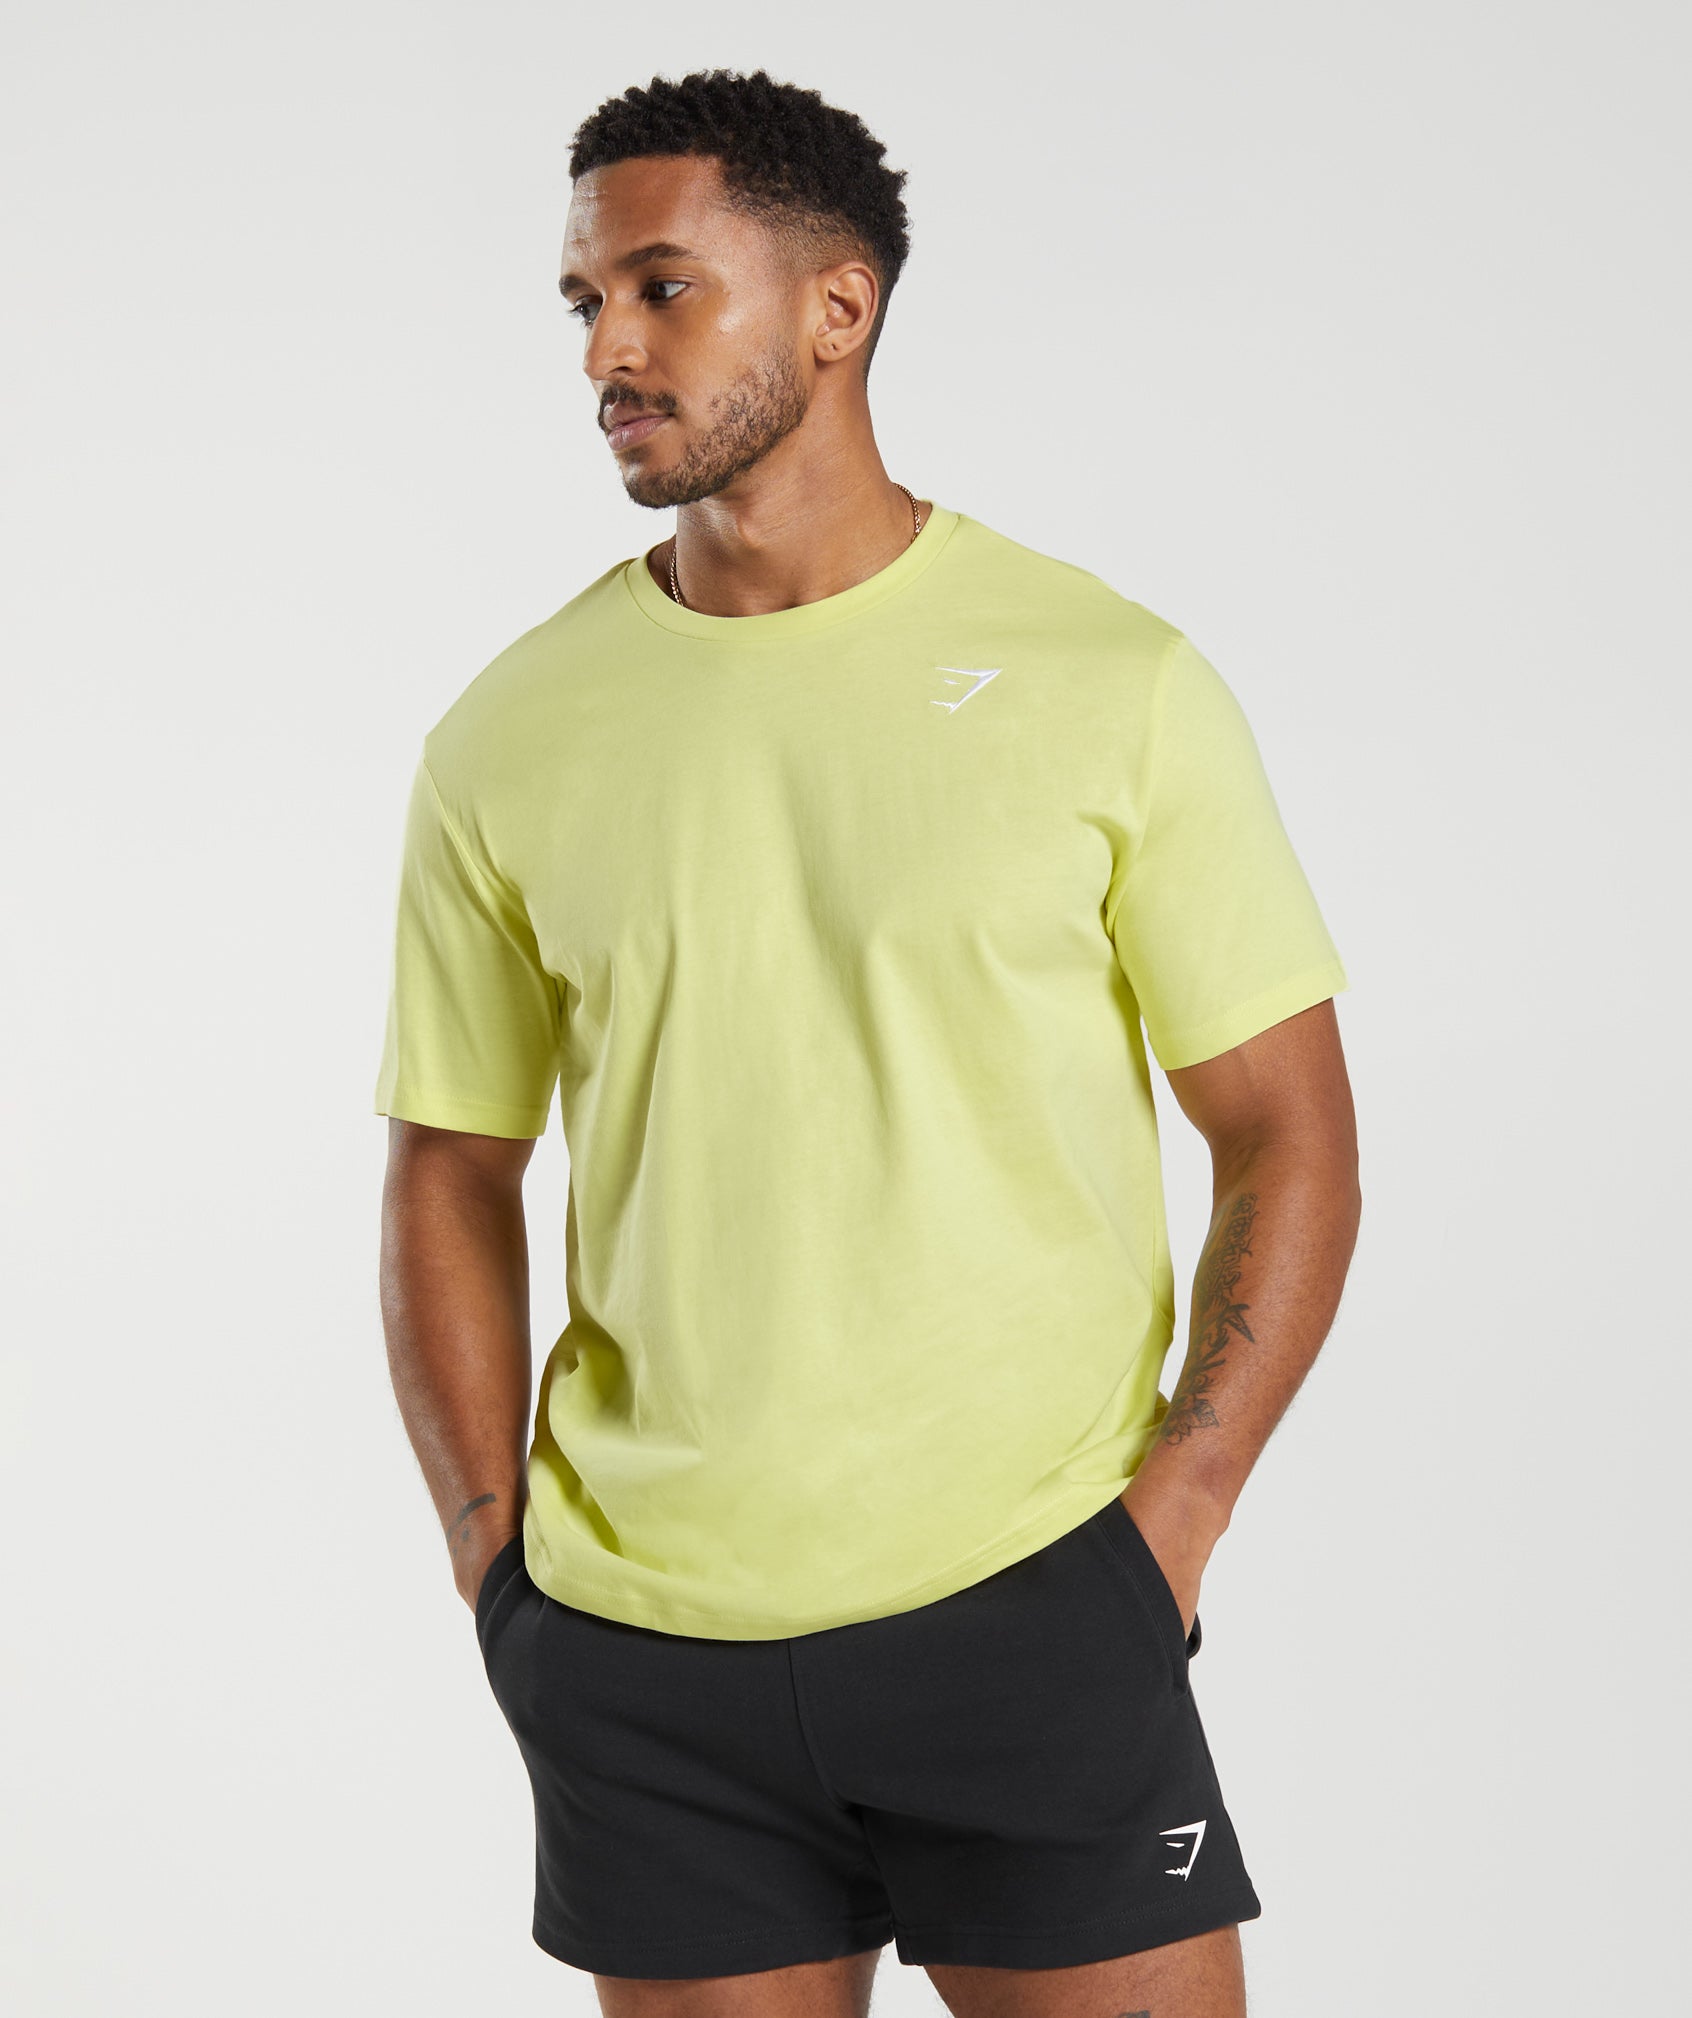 Gymshark Crest T-Shirt - Firefly Green